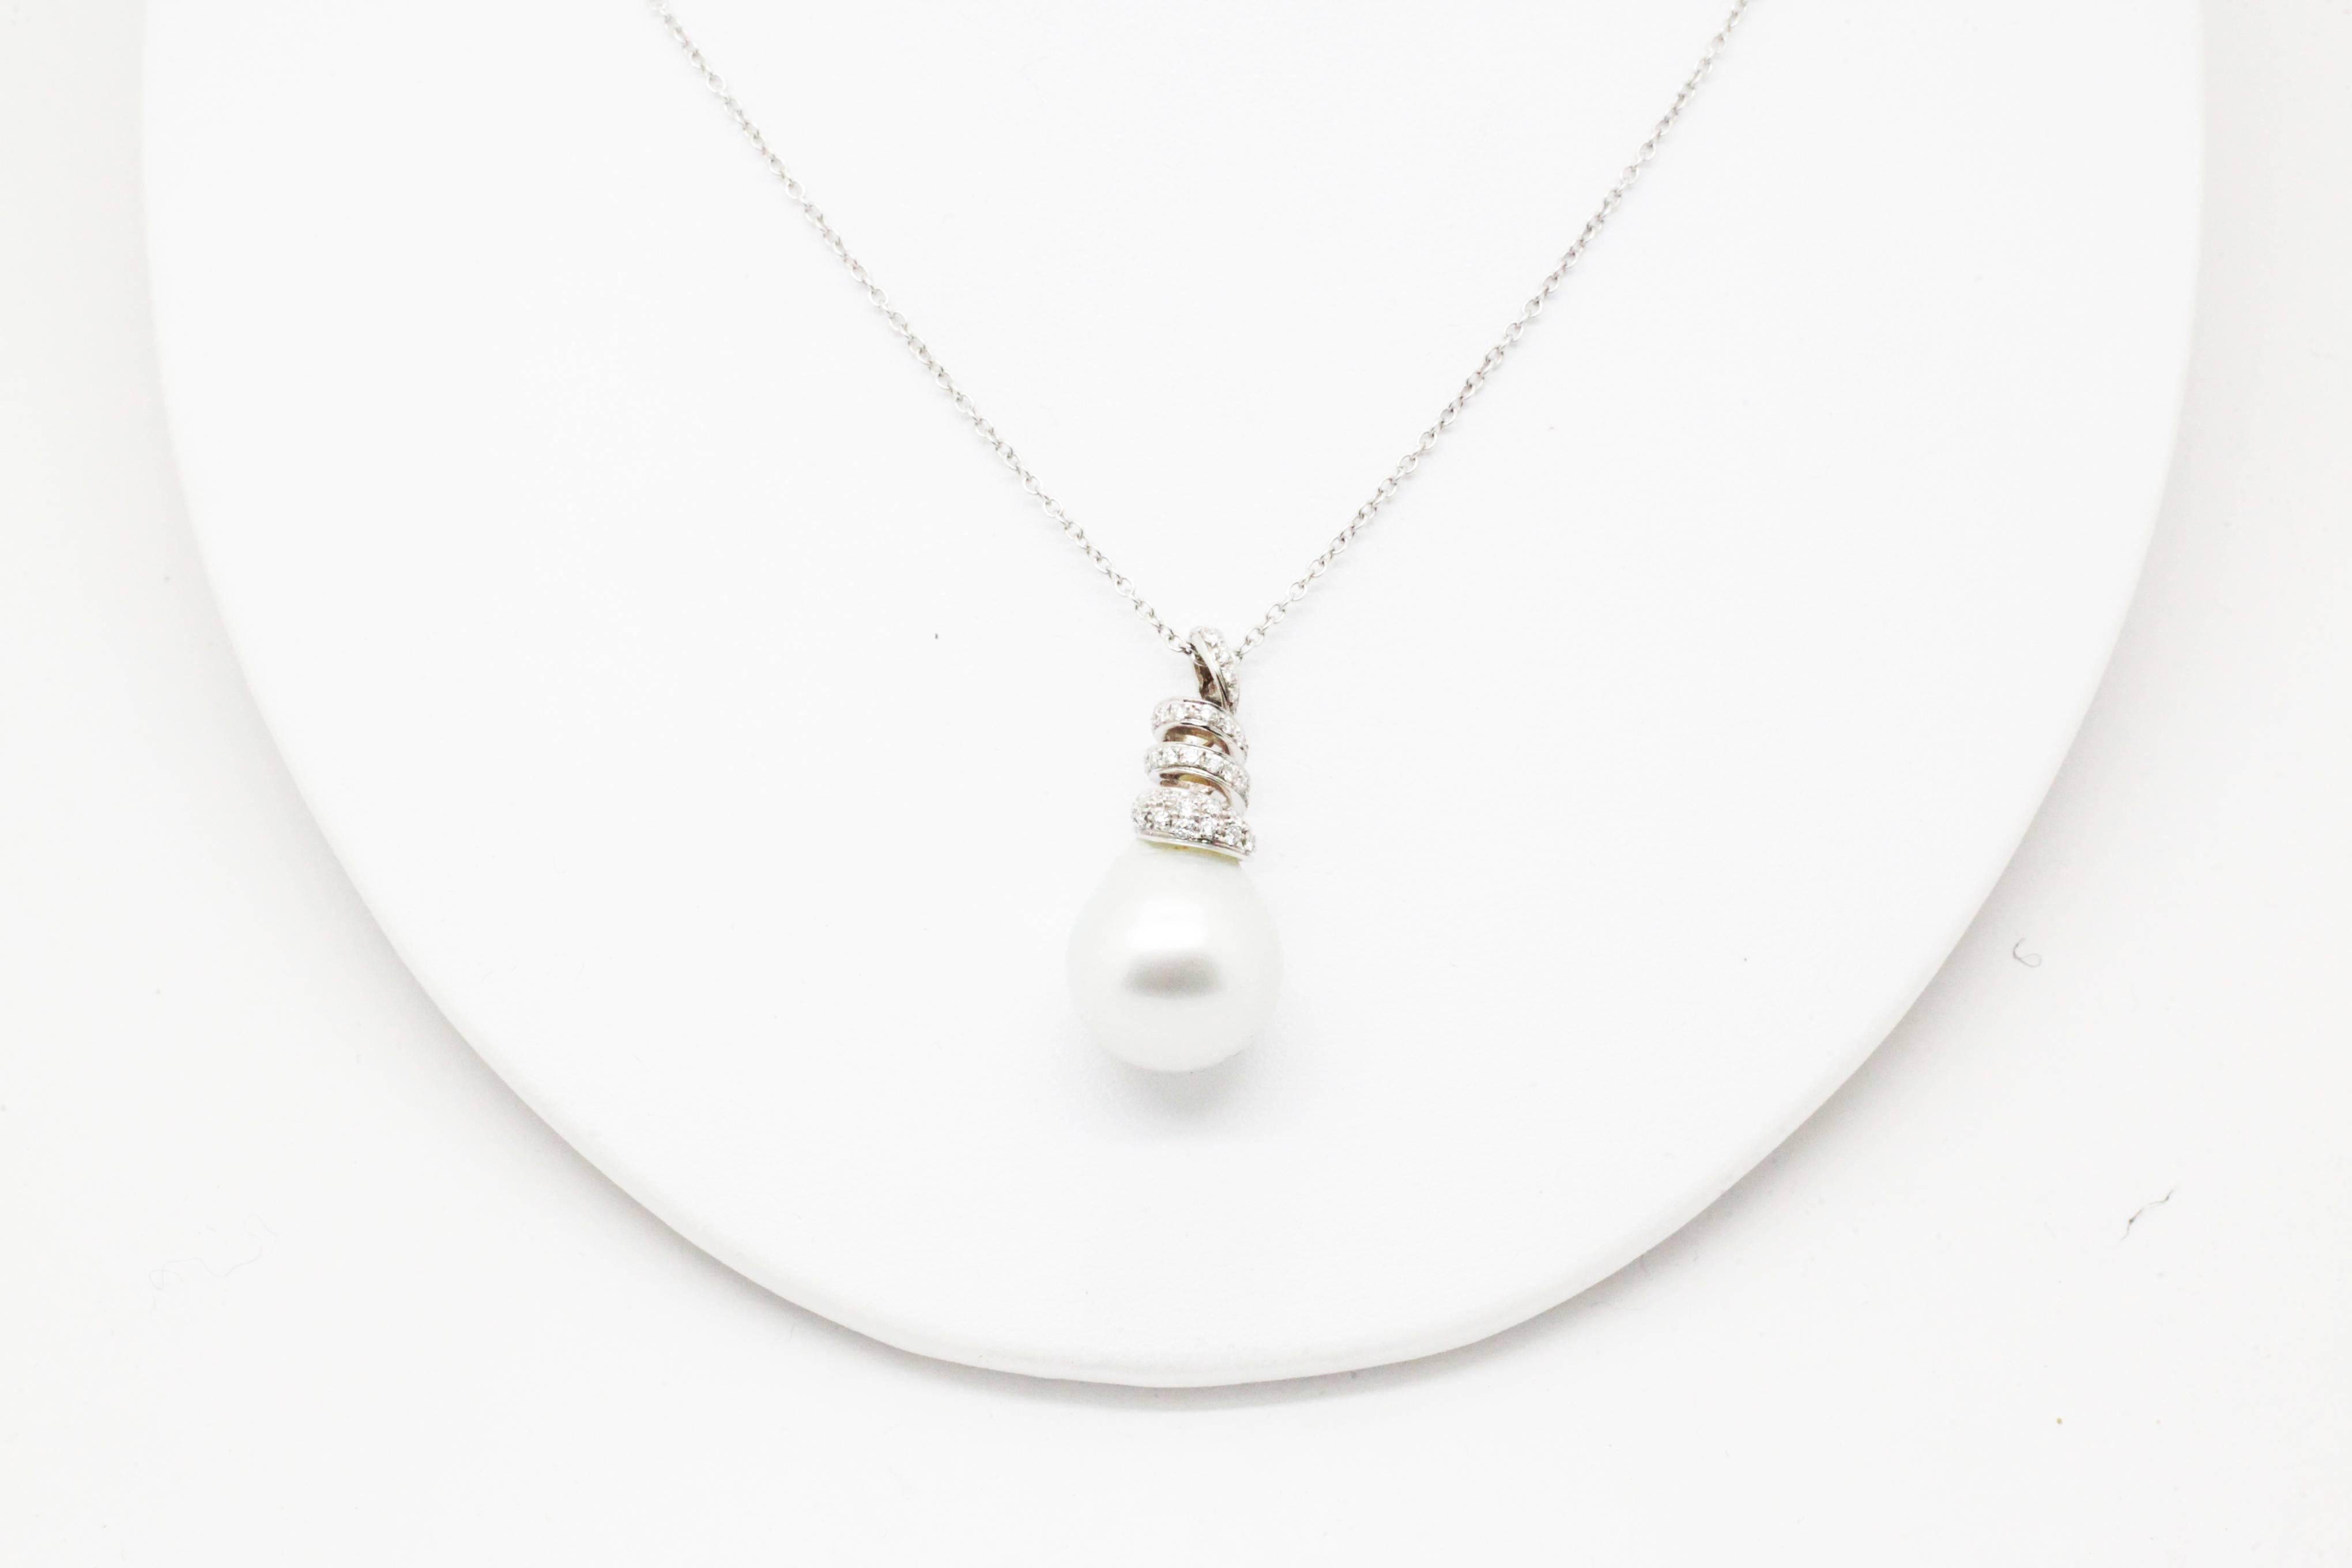 Diese FERRUCCI & CO. Halskette, zart und raffiniert, präsentiert eine australische Perle oder seltene Schönheit in einem modernen spiralförmigen Design mit weißen Diamanten pave'.

Elegant und stilvoll für jeden Tag und schick für jeden Abend, Made